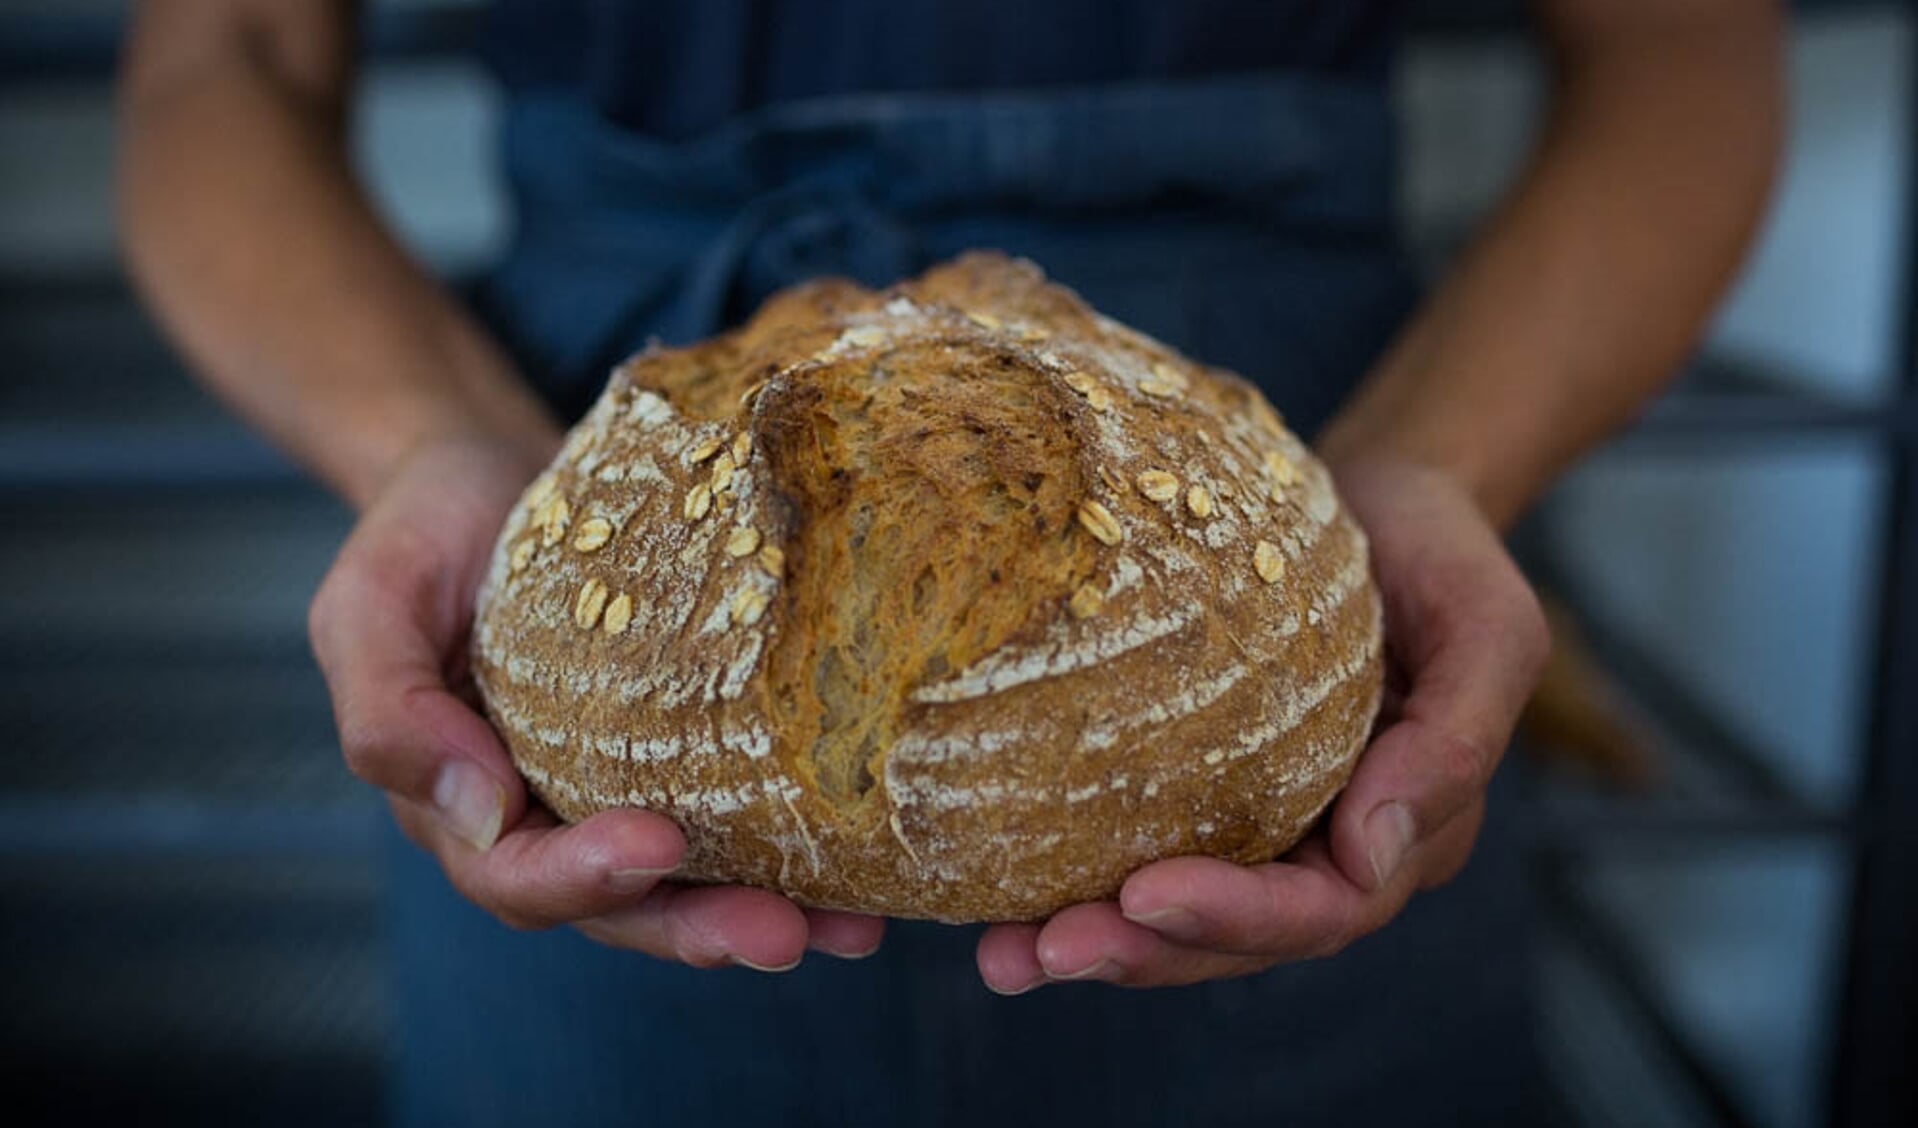 Het brood van Bak'm heeft een open structuur en een krokante korst.